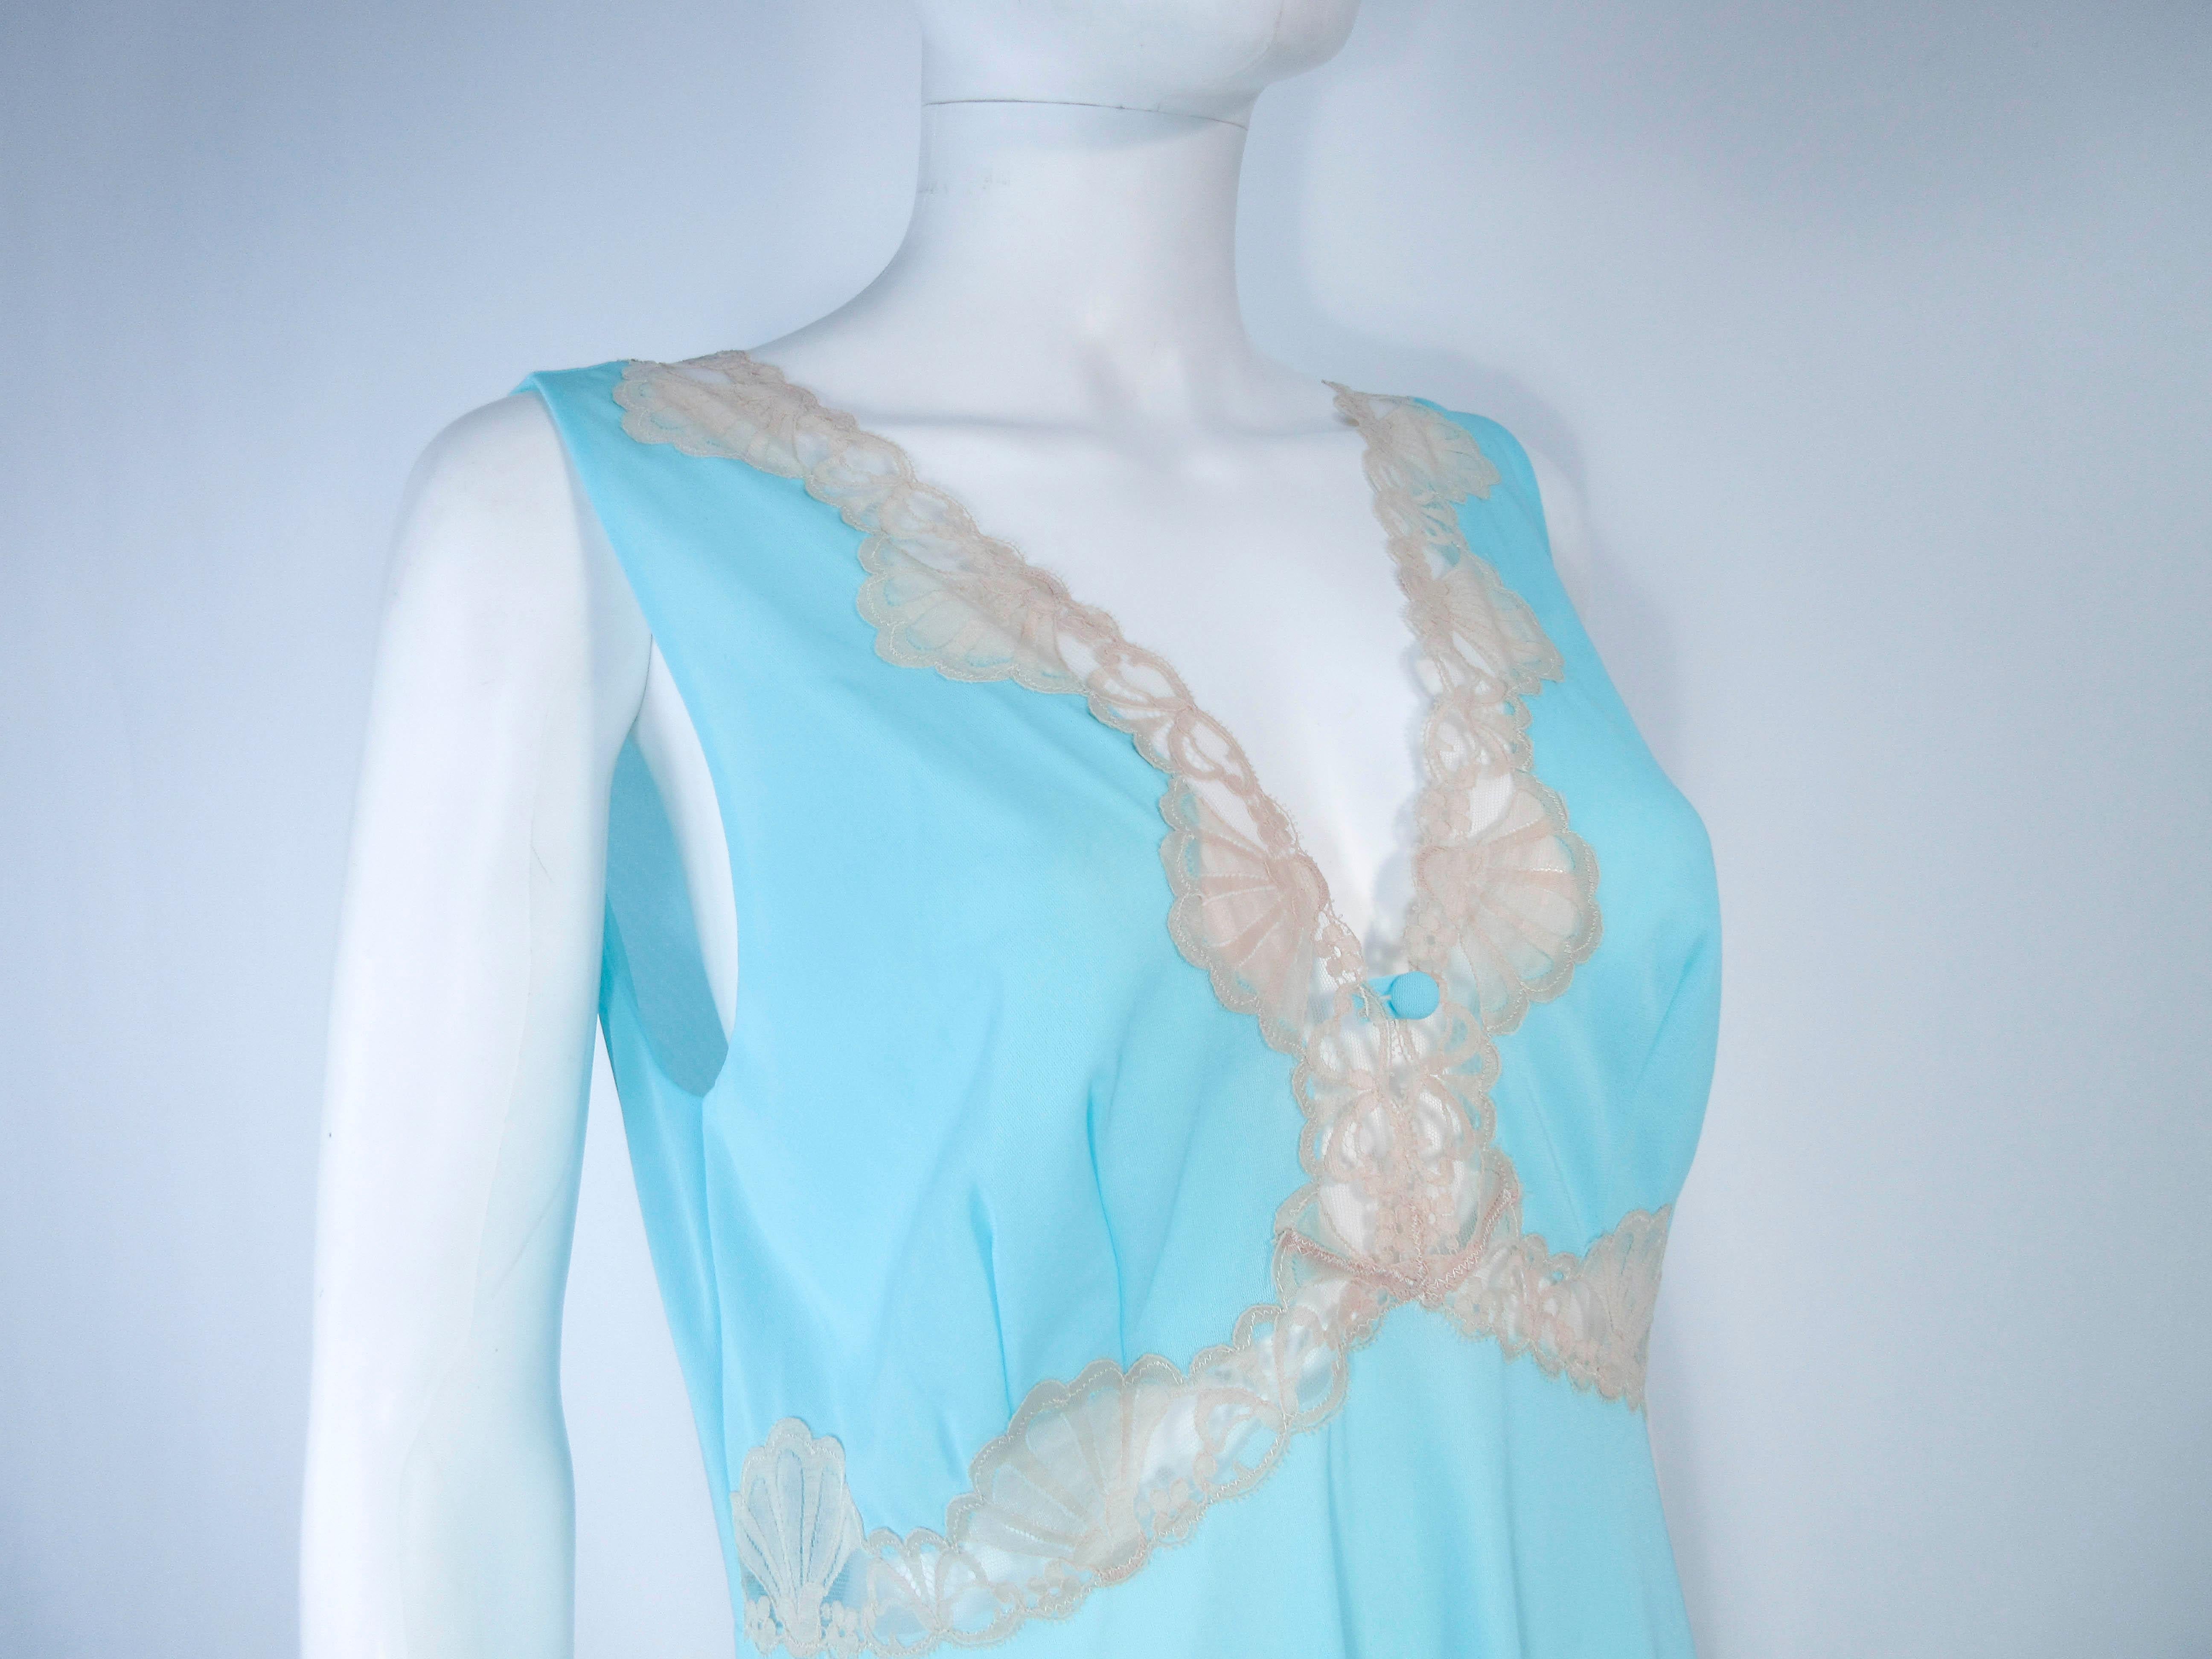 Women's EMILIO PUCCI 'Formfit Rogers' Light Blue Nude Lace Trim Slip Dress NWT Size M